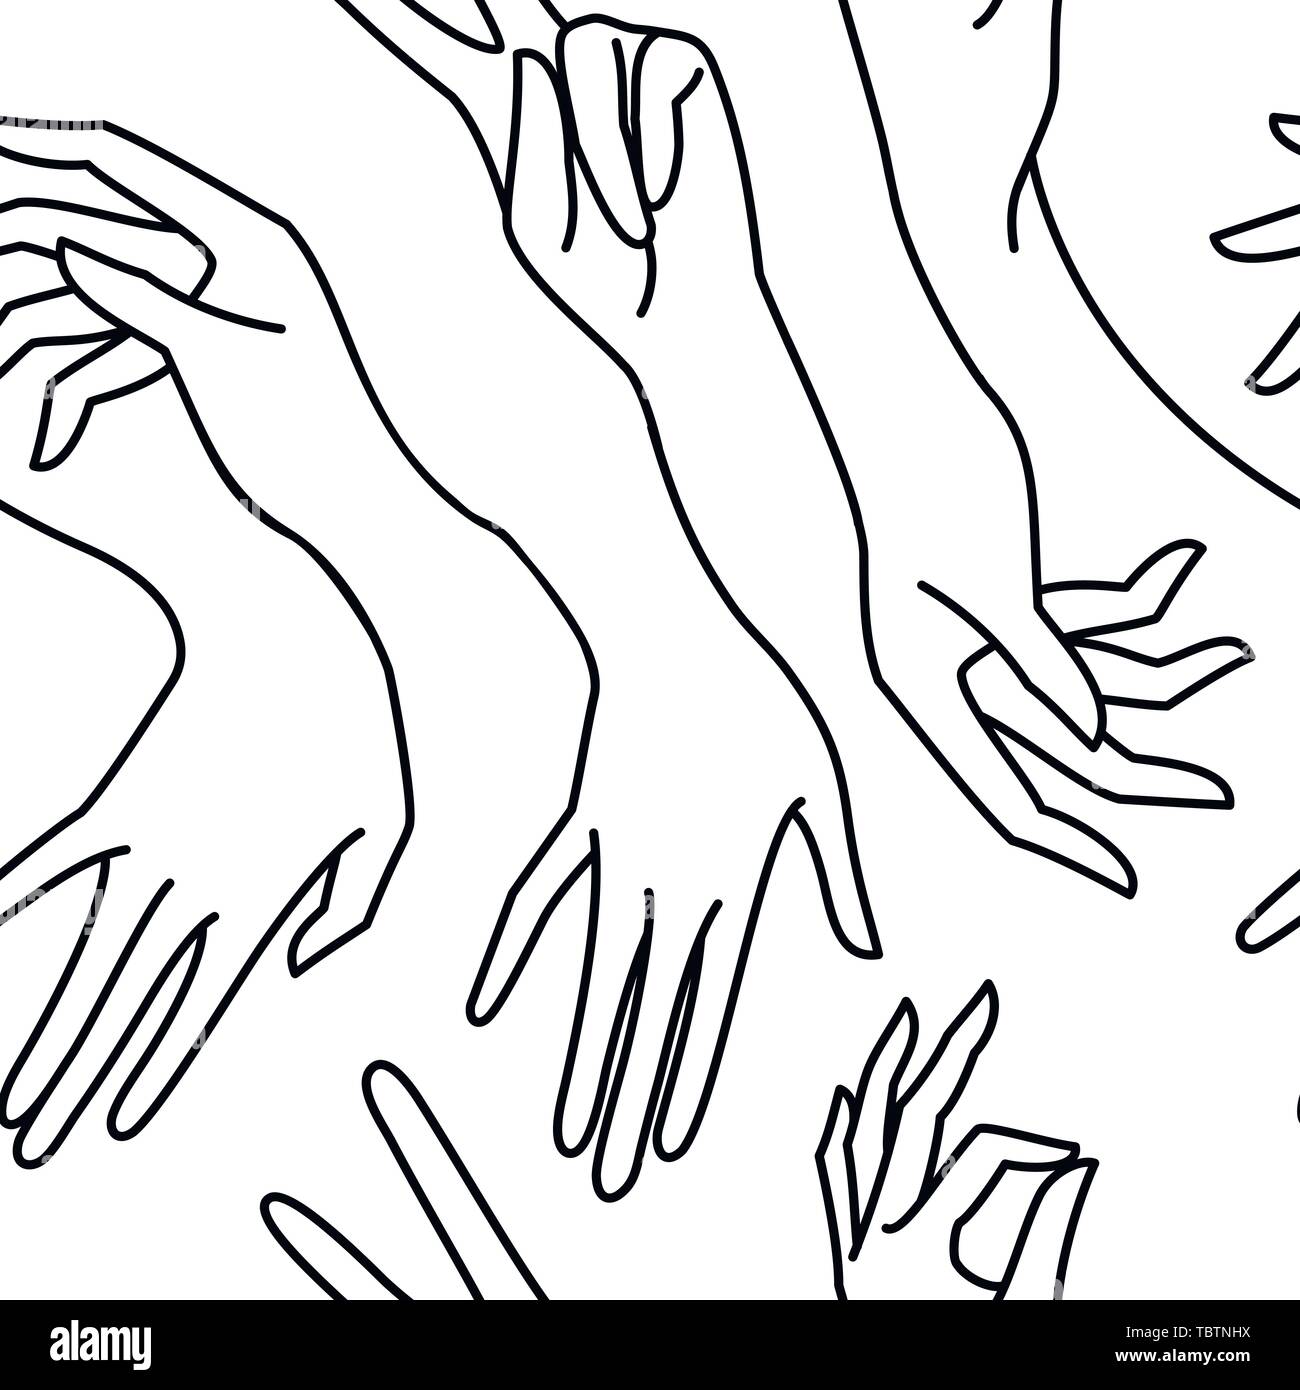 Woman's hand ligne noir et blanc motif transparent. Arrière-plan de femmes sans fin de vecteur mains de différents gestes - La victoire, d'accord. Lineart dans un style minimaliste pour imprimer sur du tissu, l'emballage Illustration de Vecteur